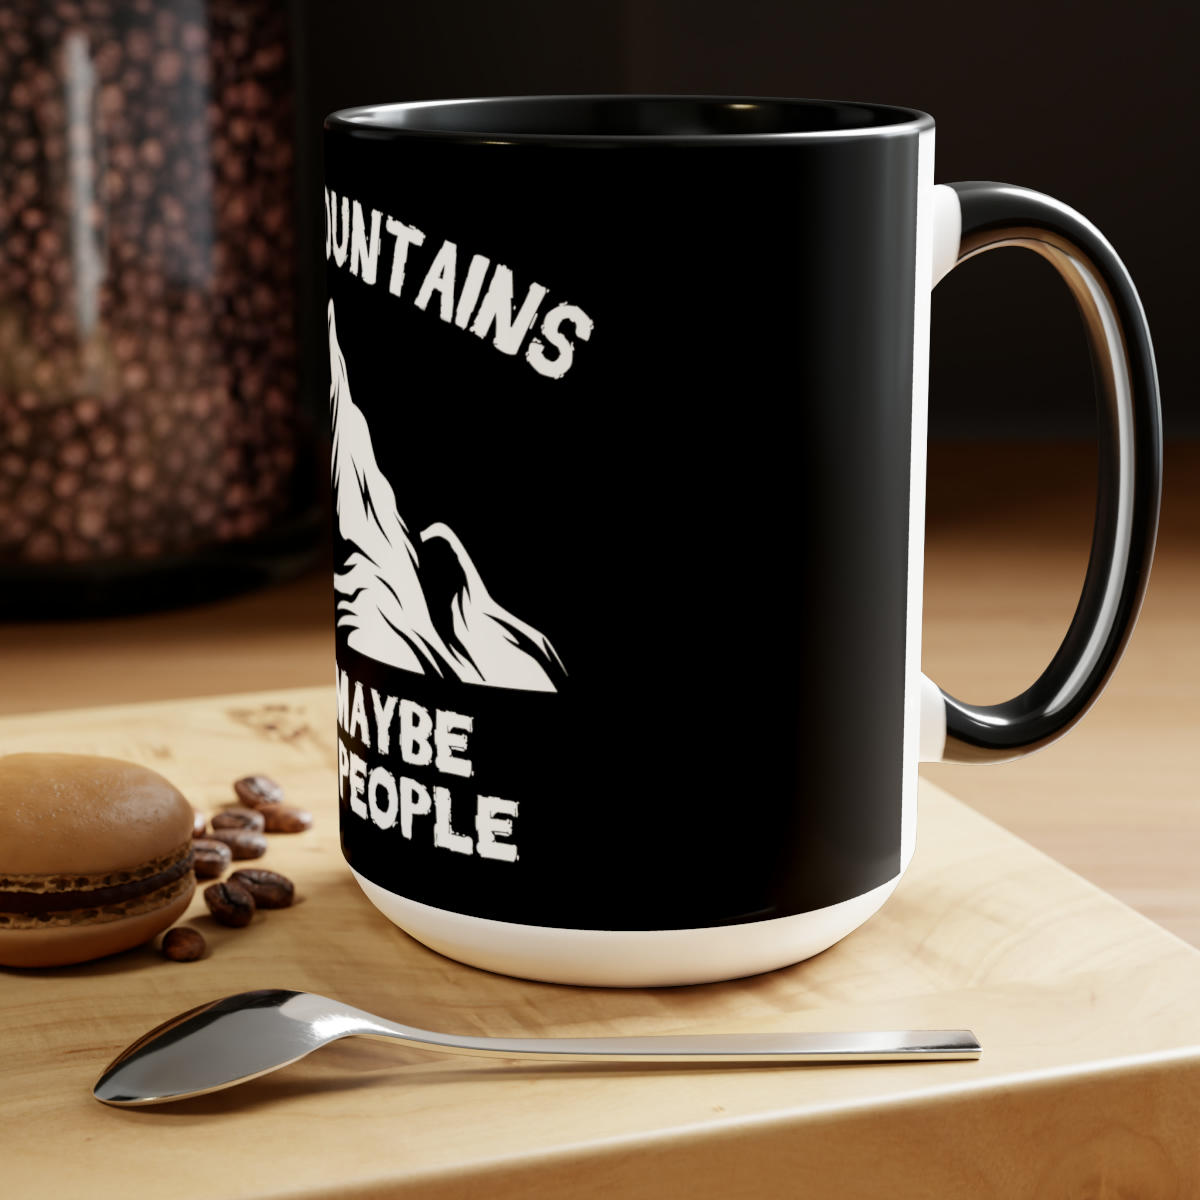 Two-Tone Coffee Mugs: 15oz of Stylish Caffeine Indulgence - $22.66